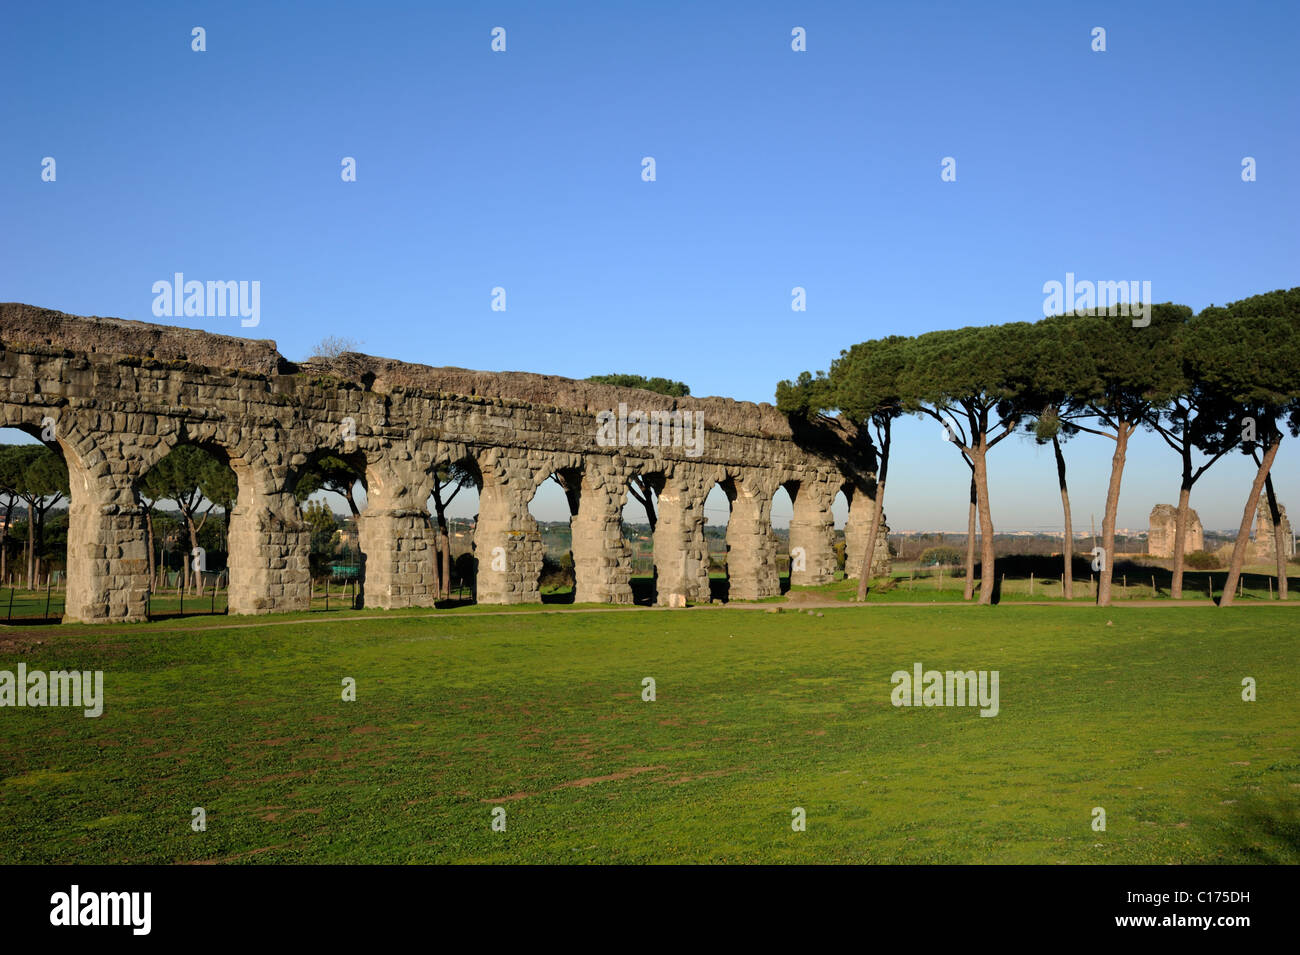 Italie, Rome, ancien aqueduc romain de l'Aqua Claudia dans le Parco degli Acquedotti (parc des aqueducs) Banque D'Images